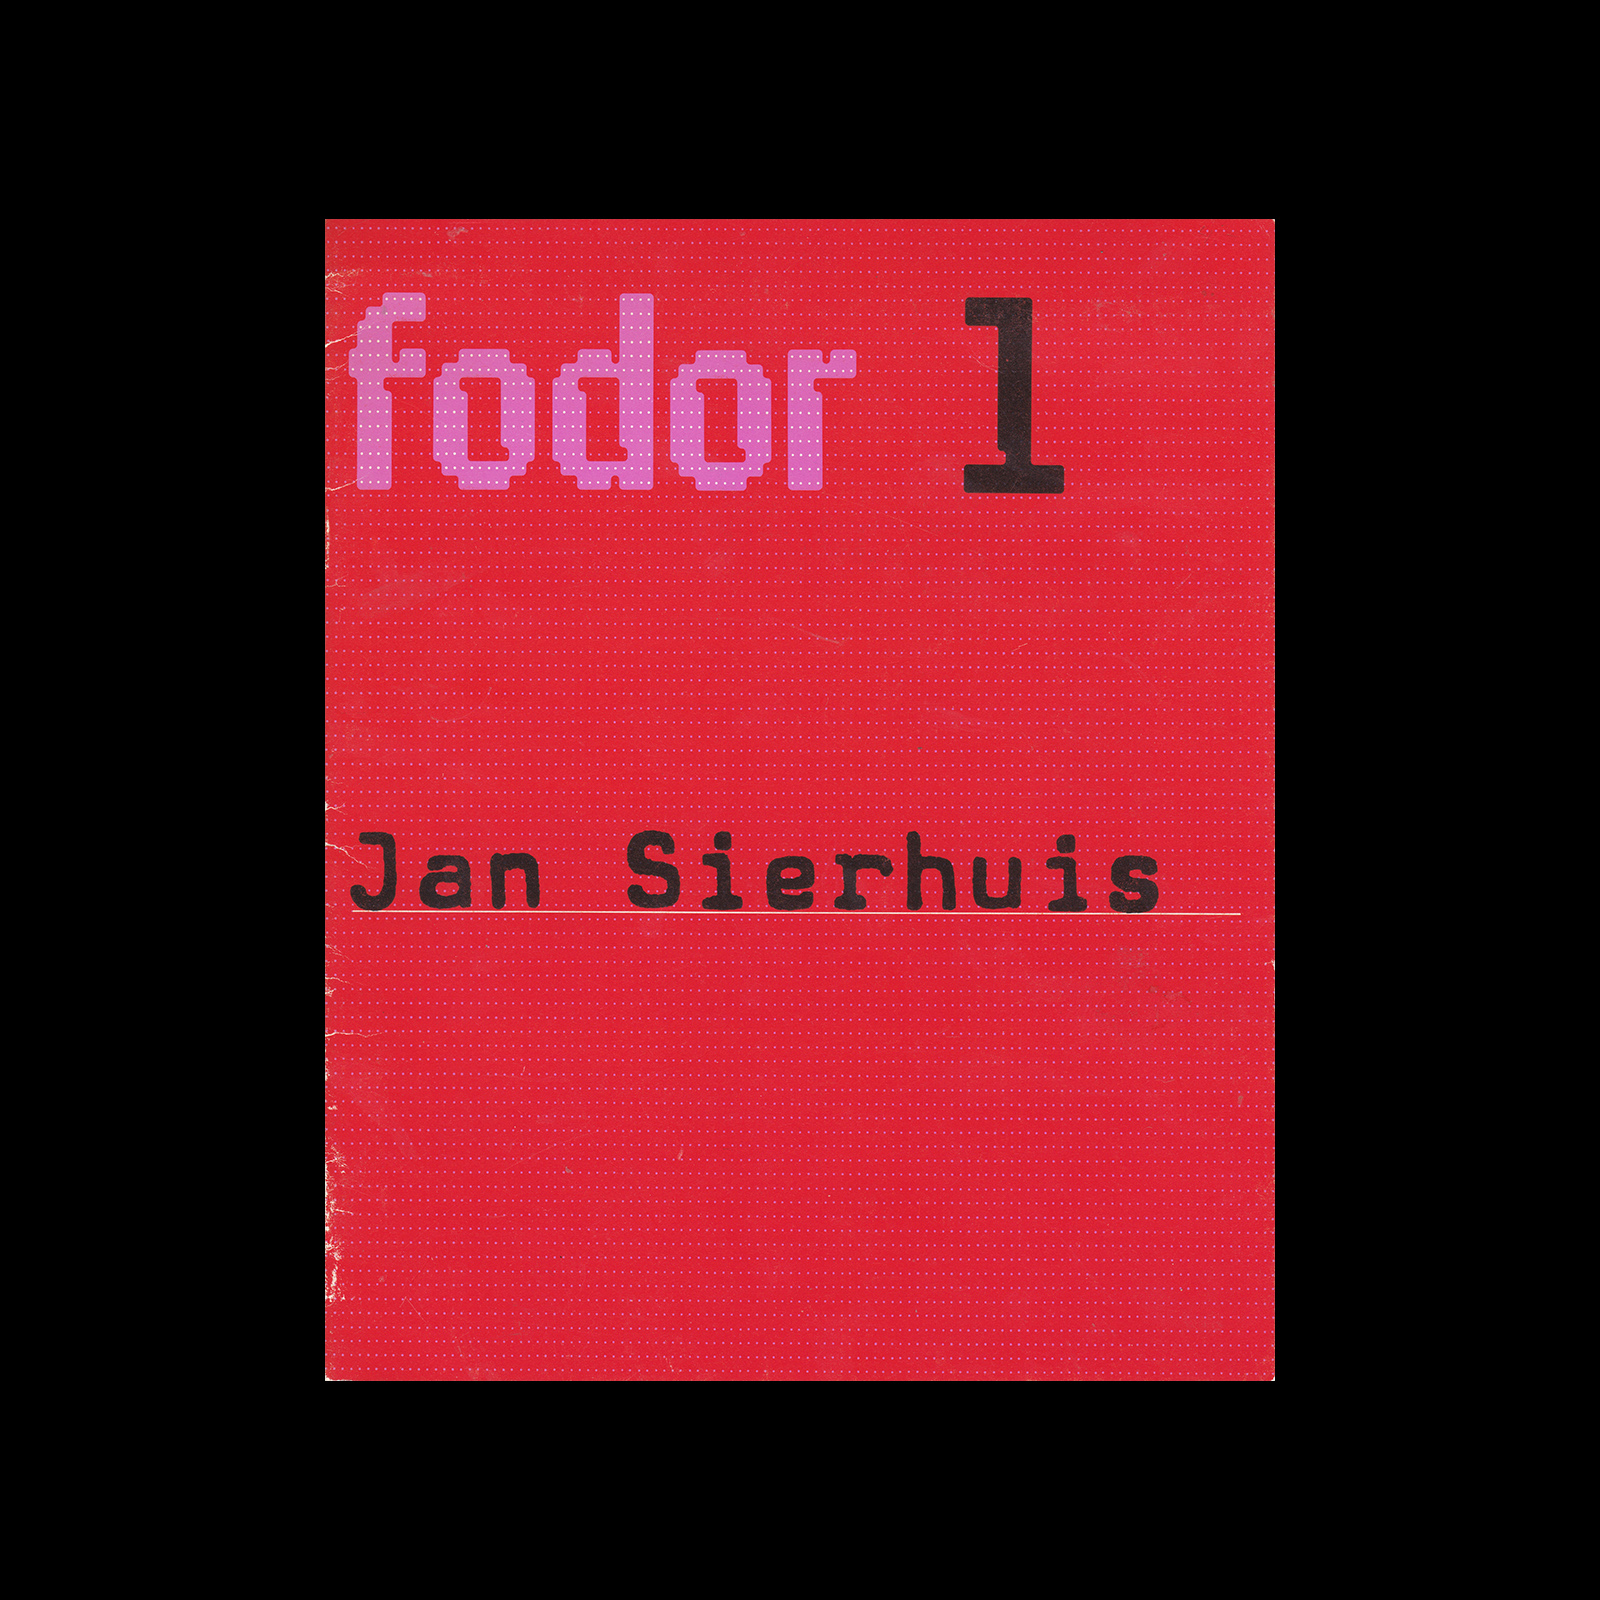 Fodor 1, 1972 - Jan Sierhuis. Designed by Wim Crouwel.